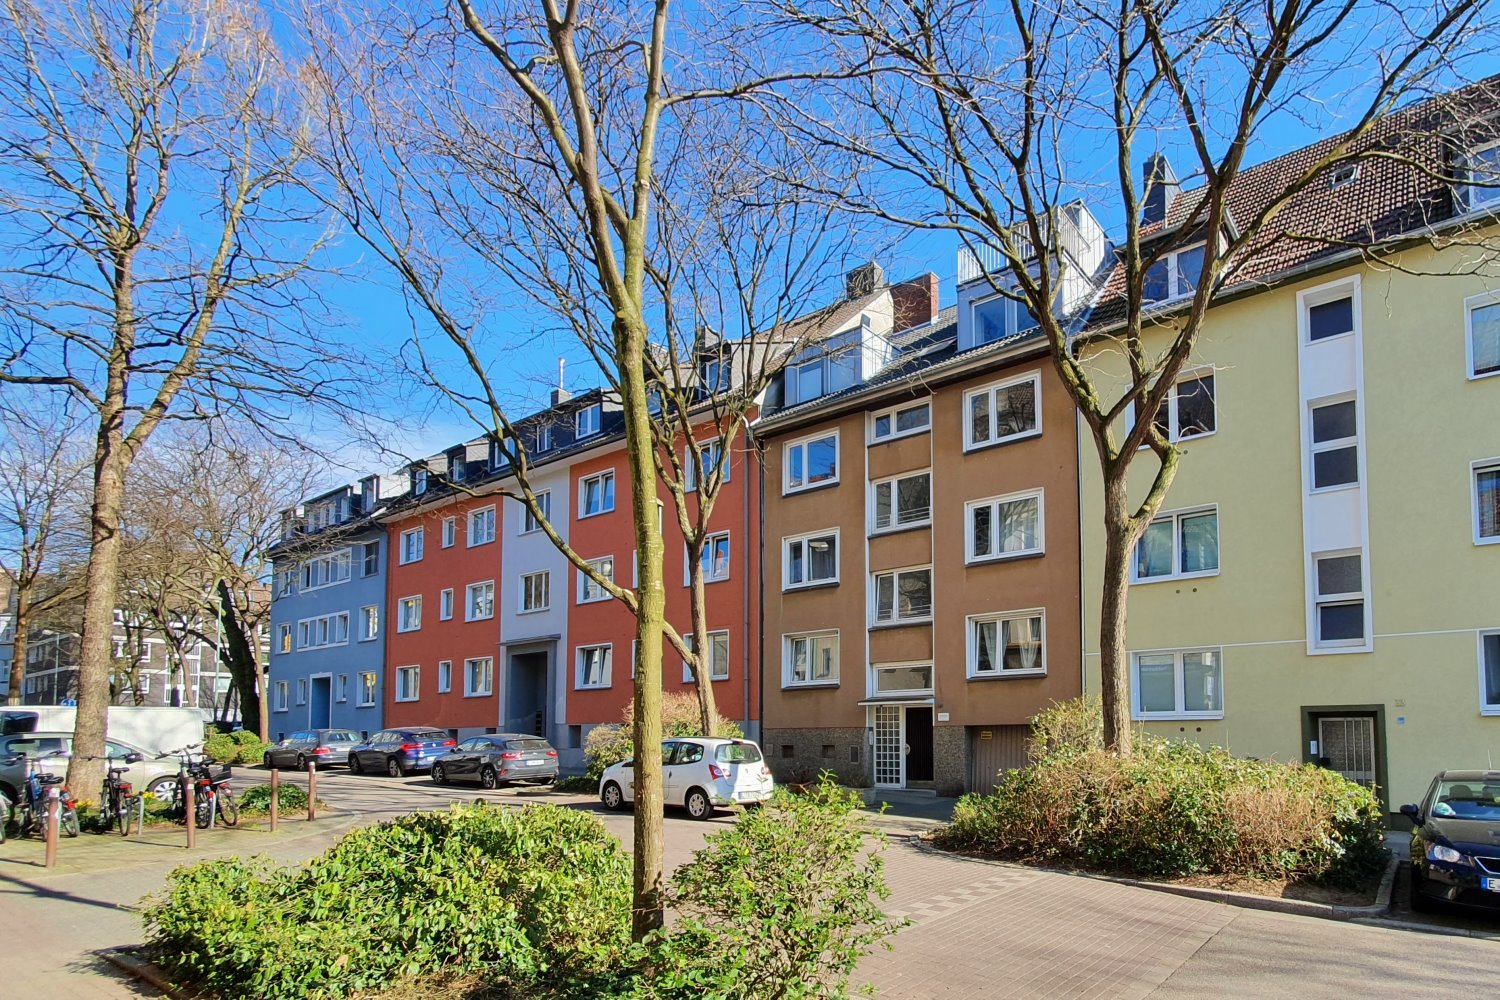 97 m² große Eigentumswohnung in ruhiger Wohnstraße in Rüttenscheid